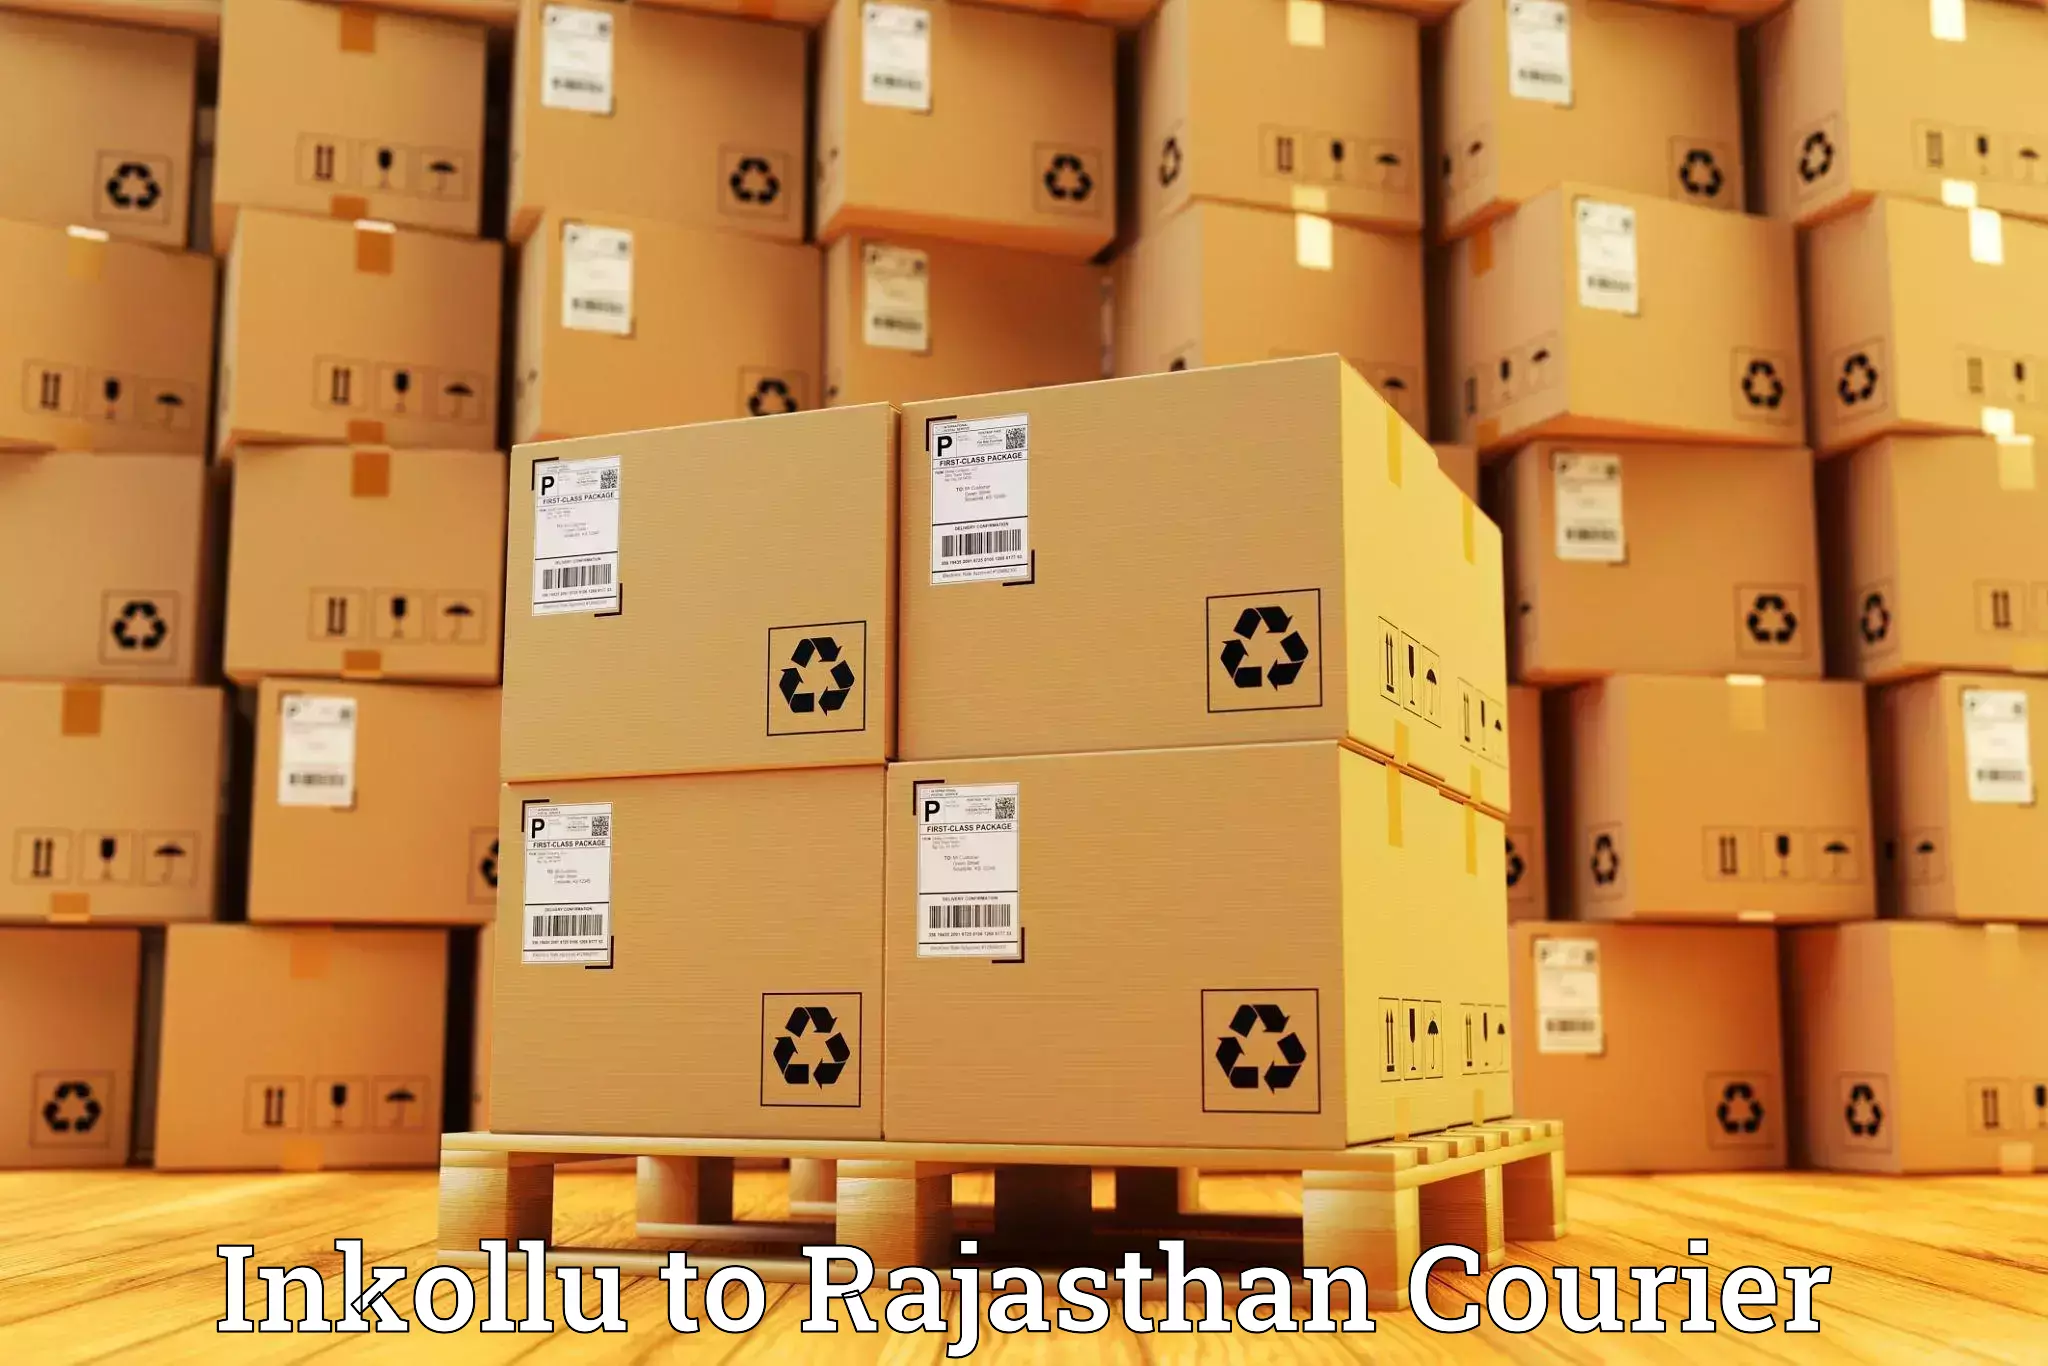 Express postal services Inkollu to Jodhpur